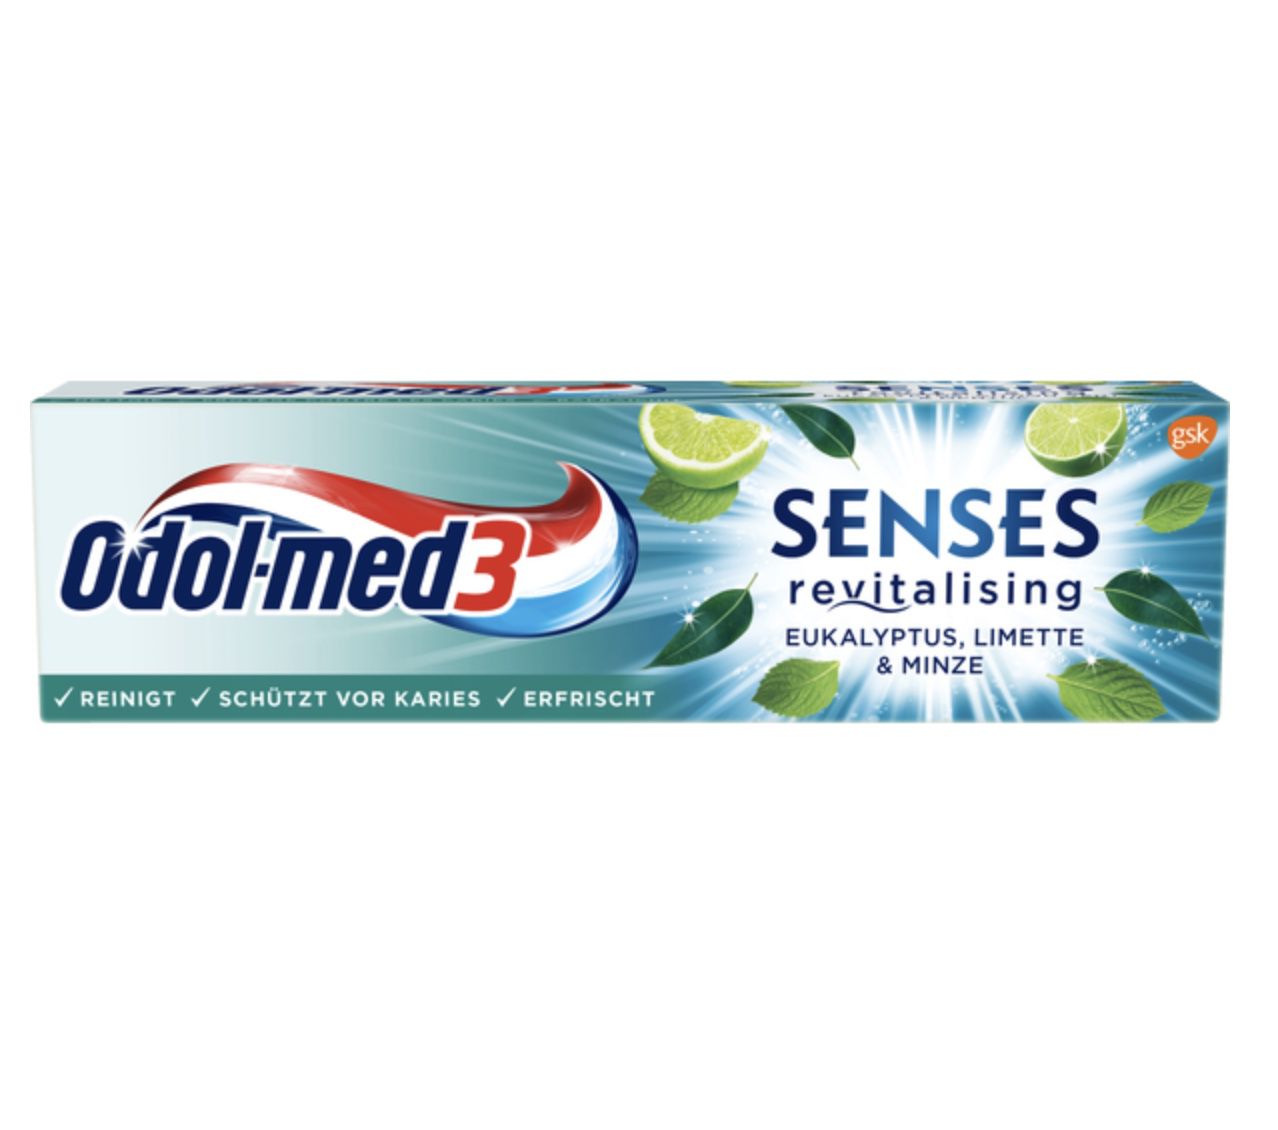 Odol-med3 Senses revitalising Eukalyptus, Limette &#038; Minze für 1,34€ &#8211; Prime Sparabo